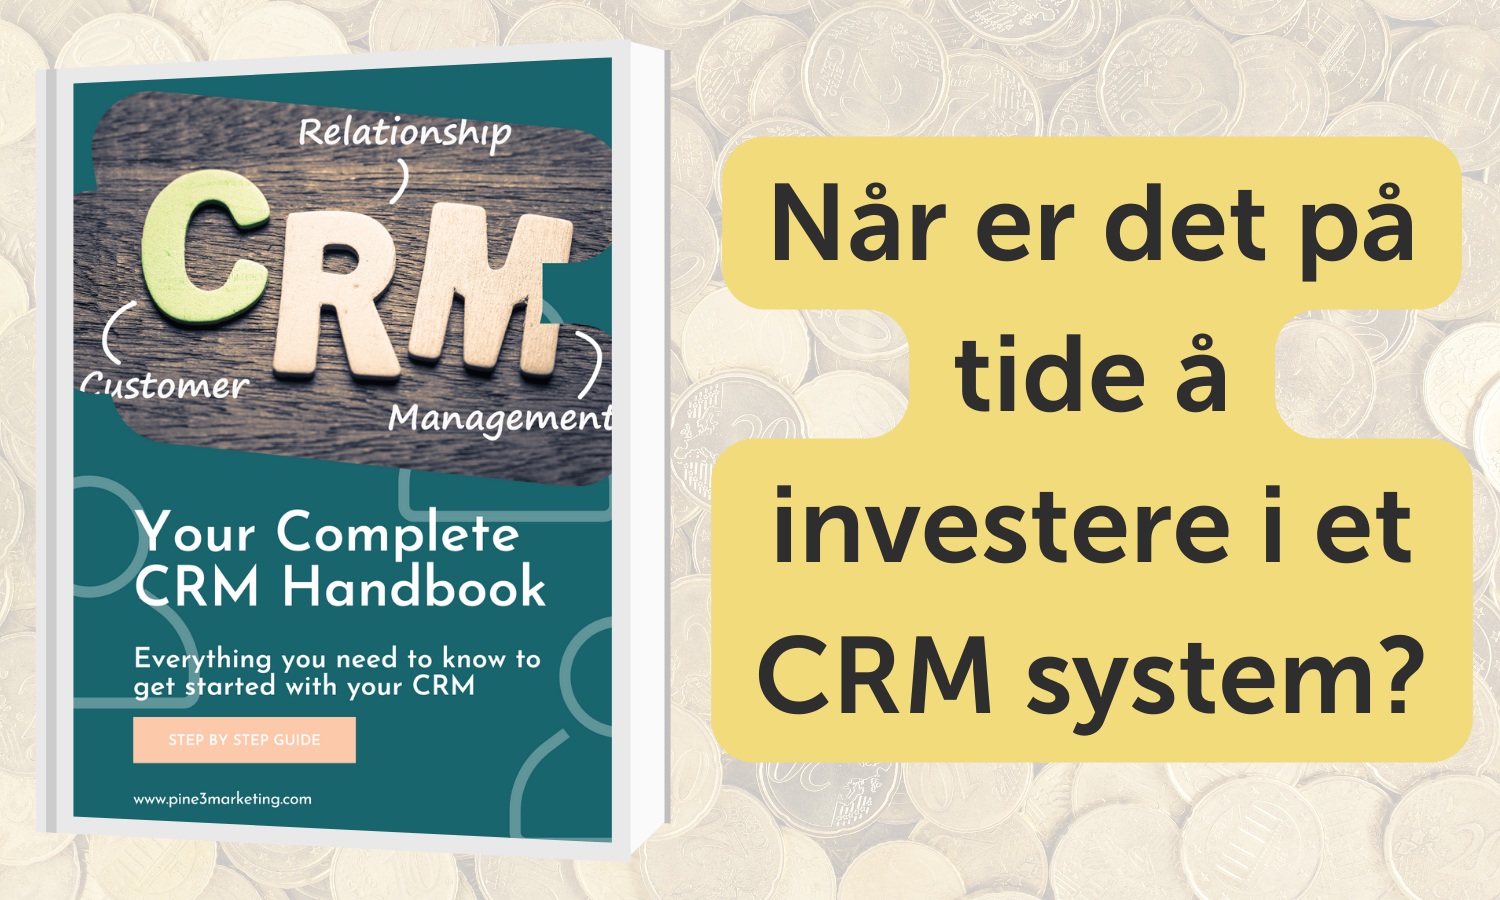 Gründervekst - er du Gründer? Øk salget ditt! Når er det på tide å investere i et CRM system?